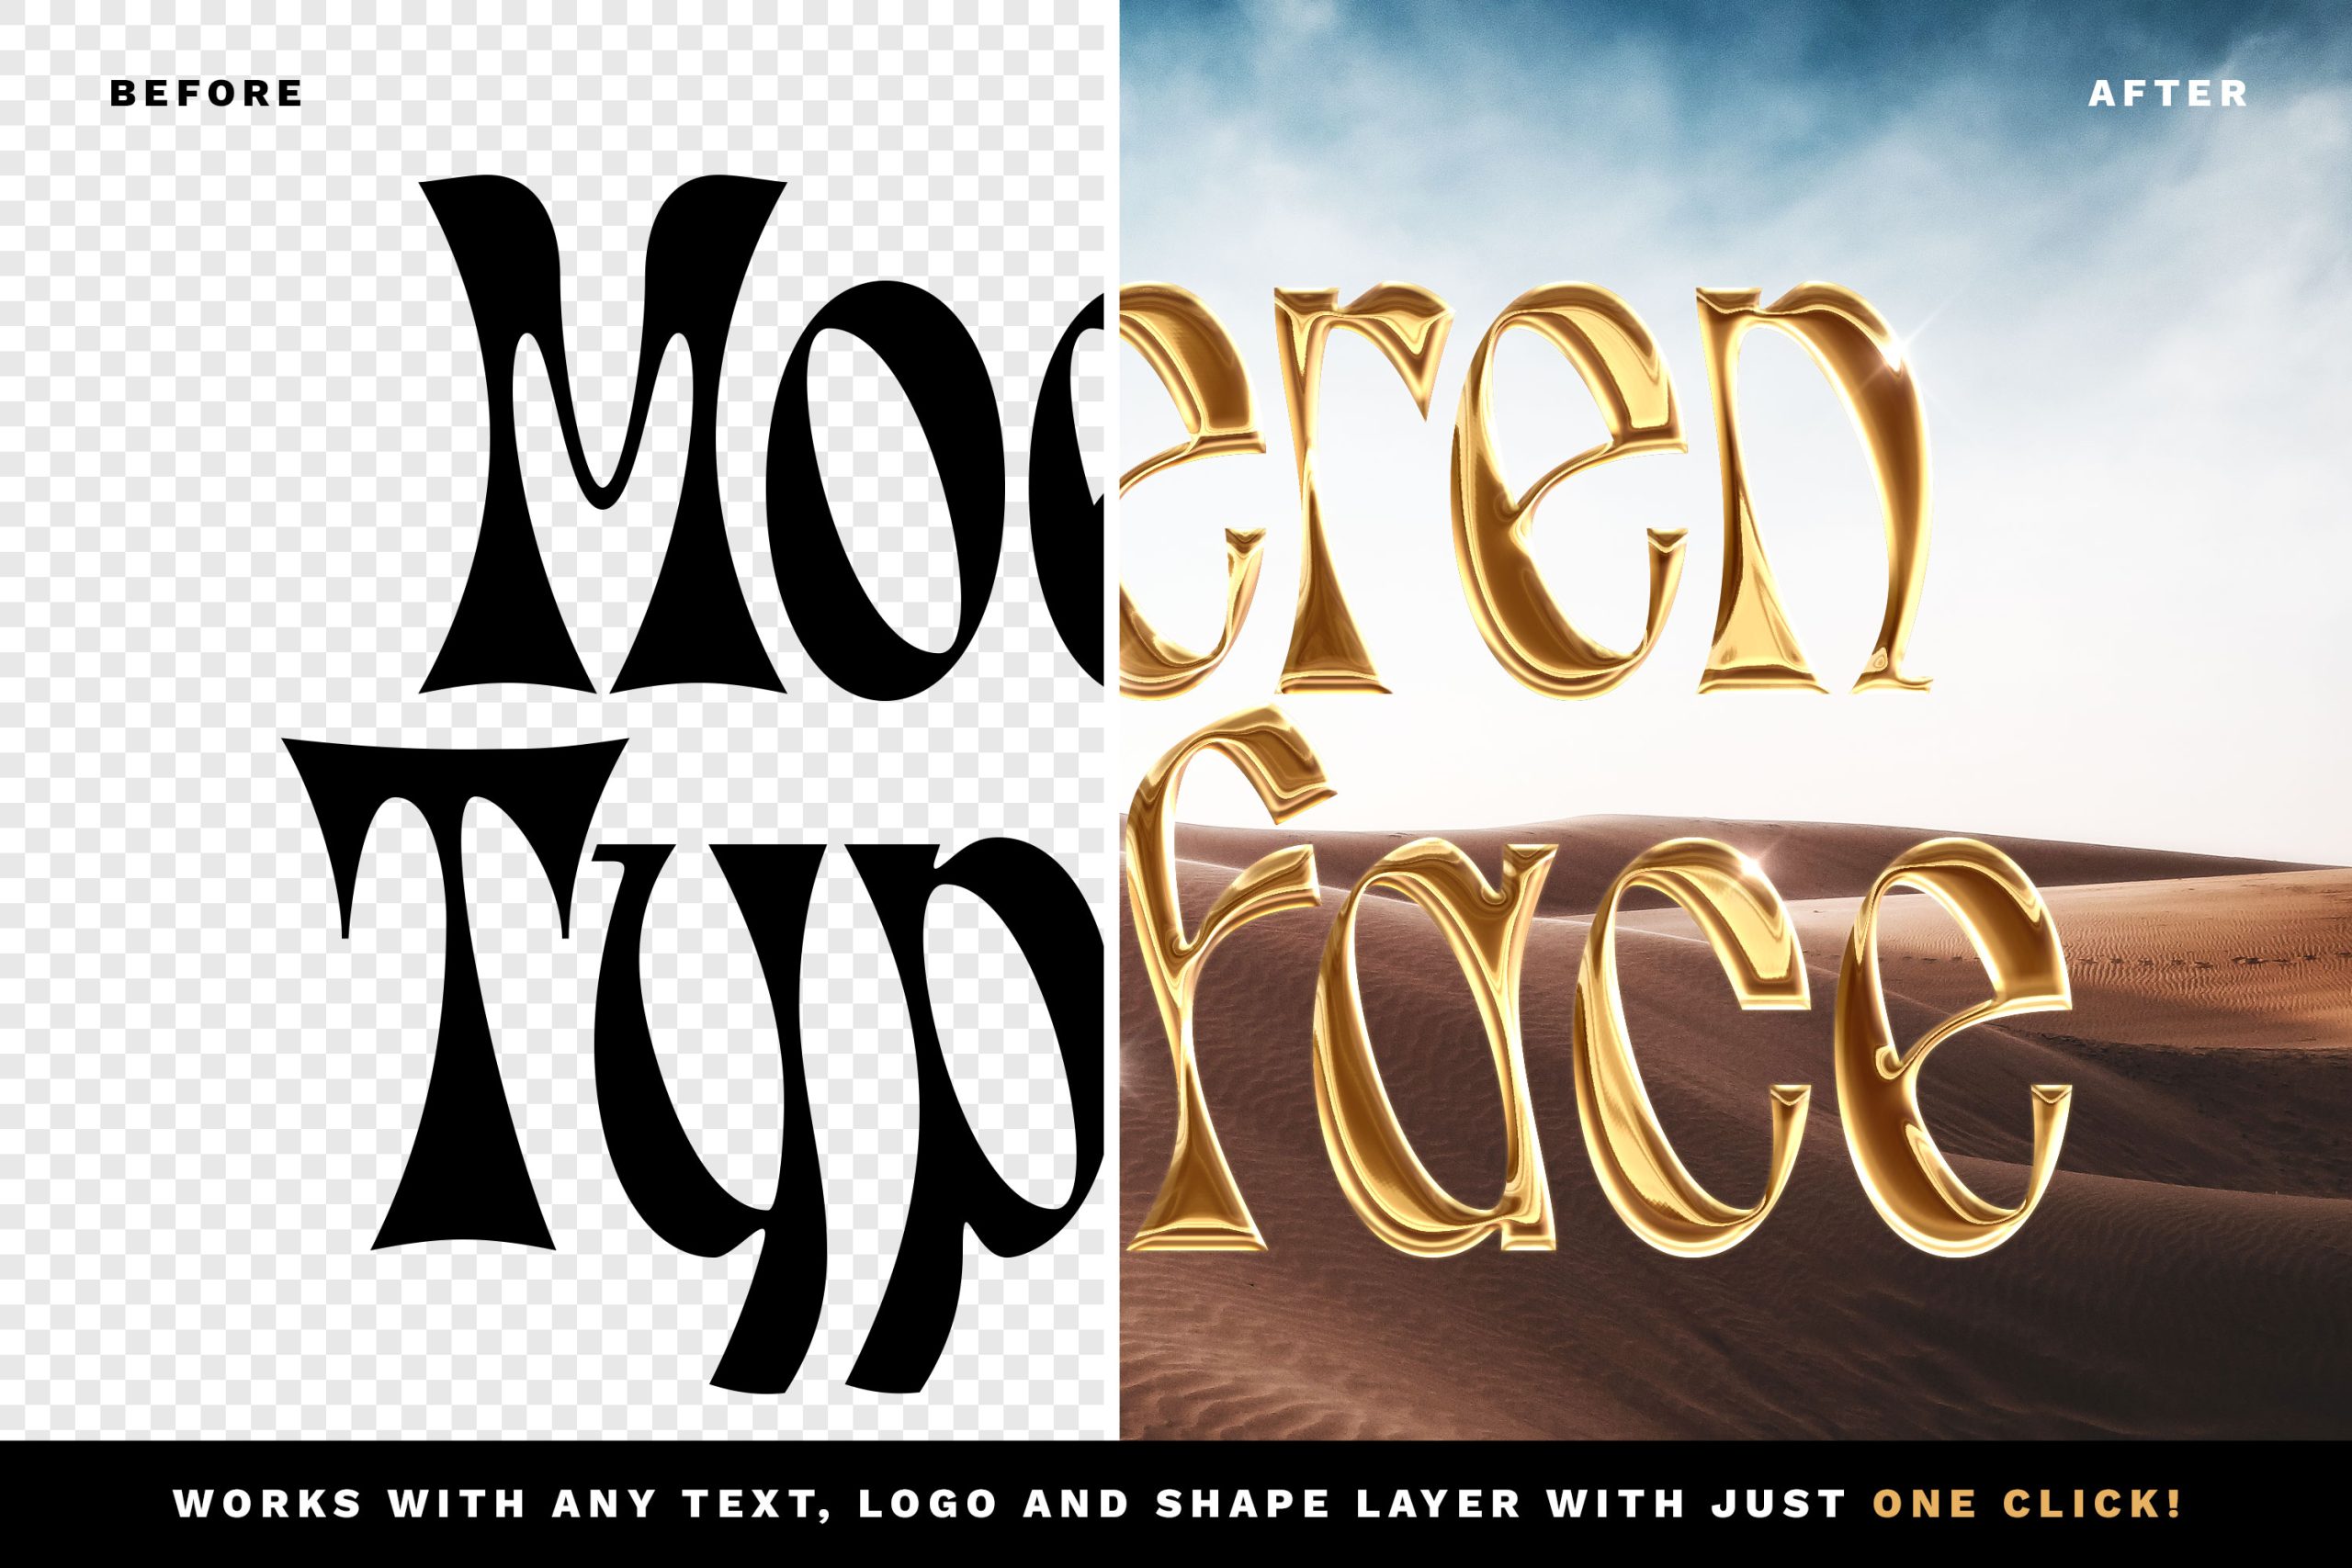 潮流酸性艺术黄金镀铬金属字体特效PSD模板素材 Luxury Chrome Text Logo Style Vol.3 图标素材 第4张